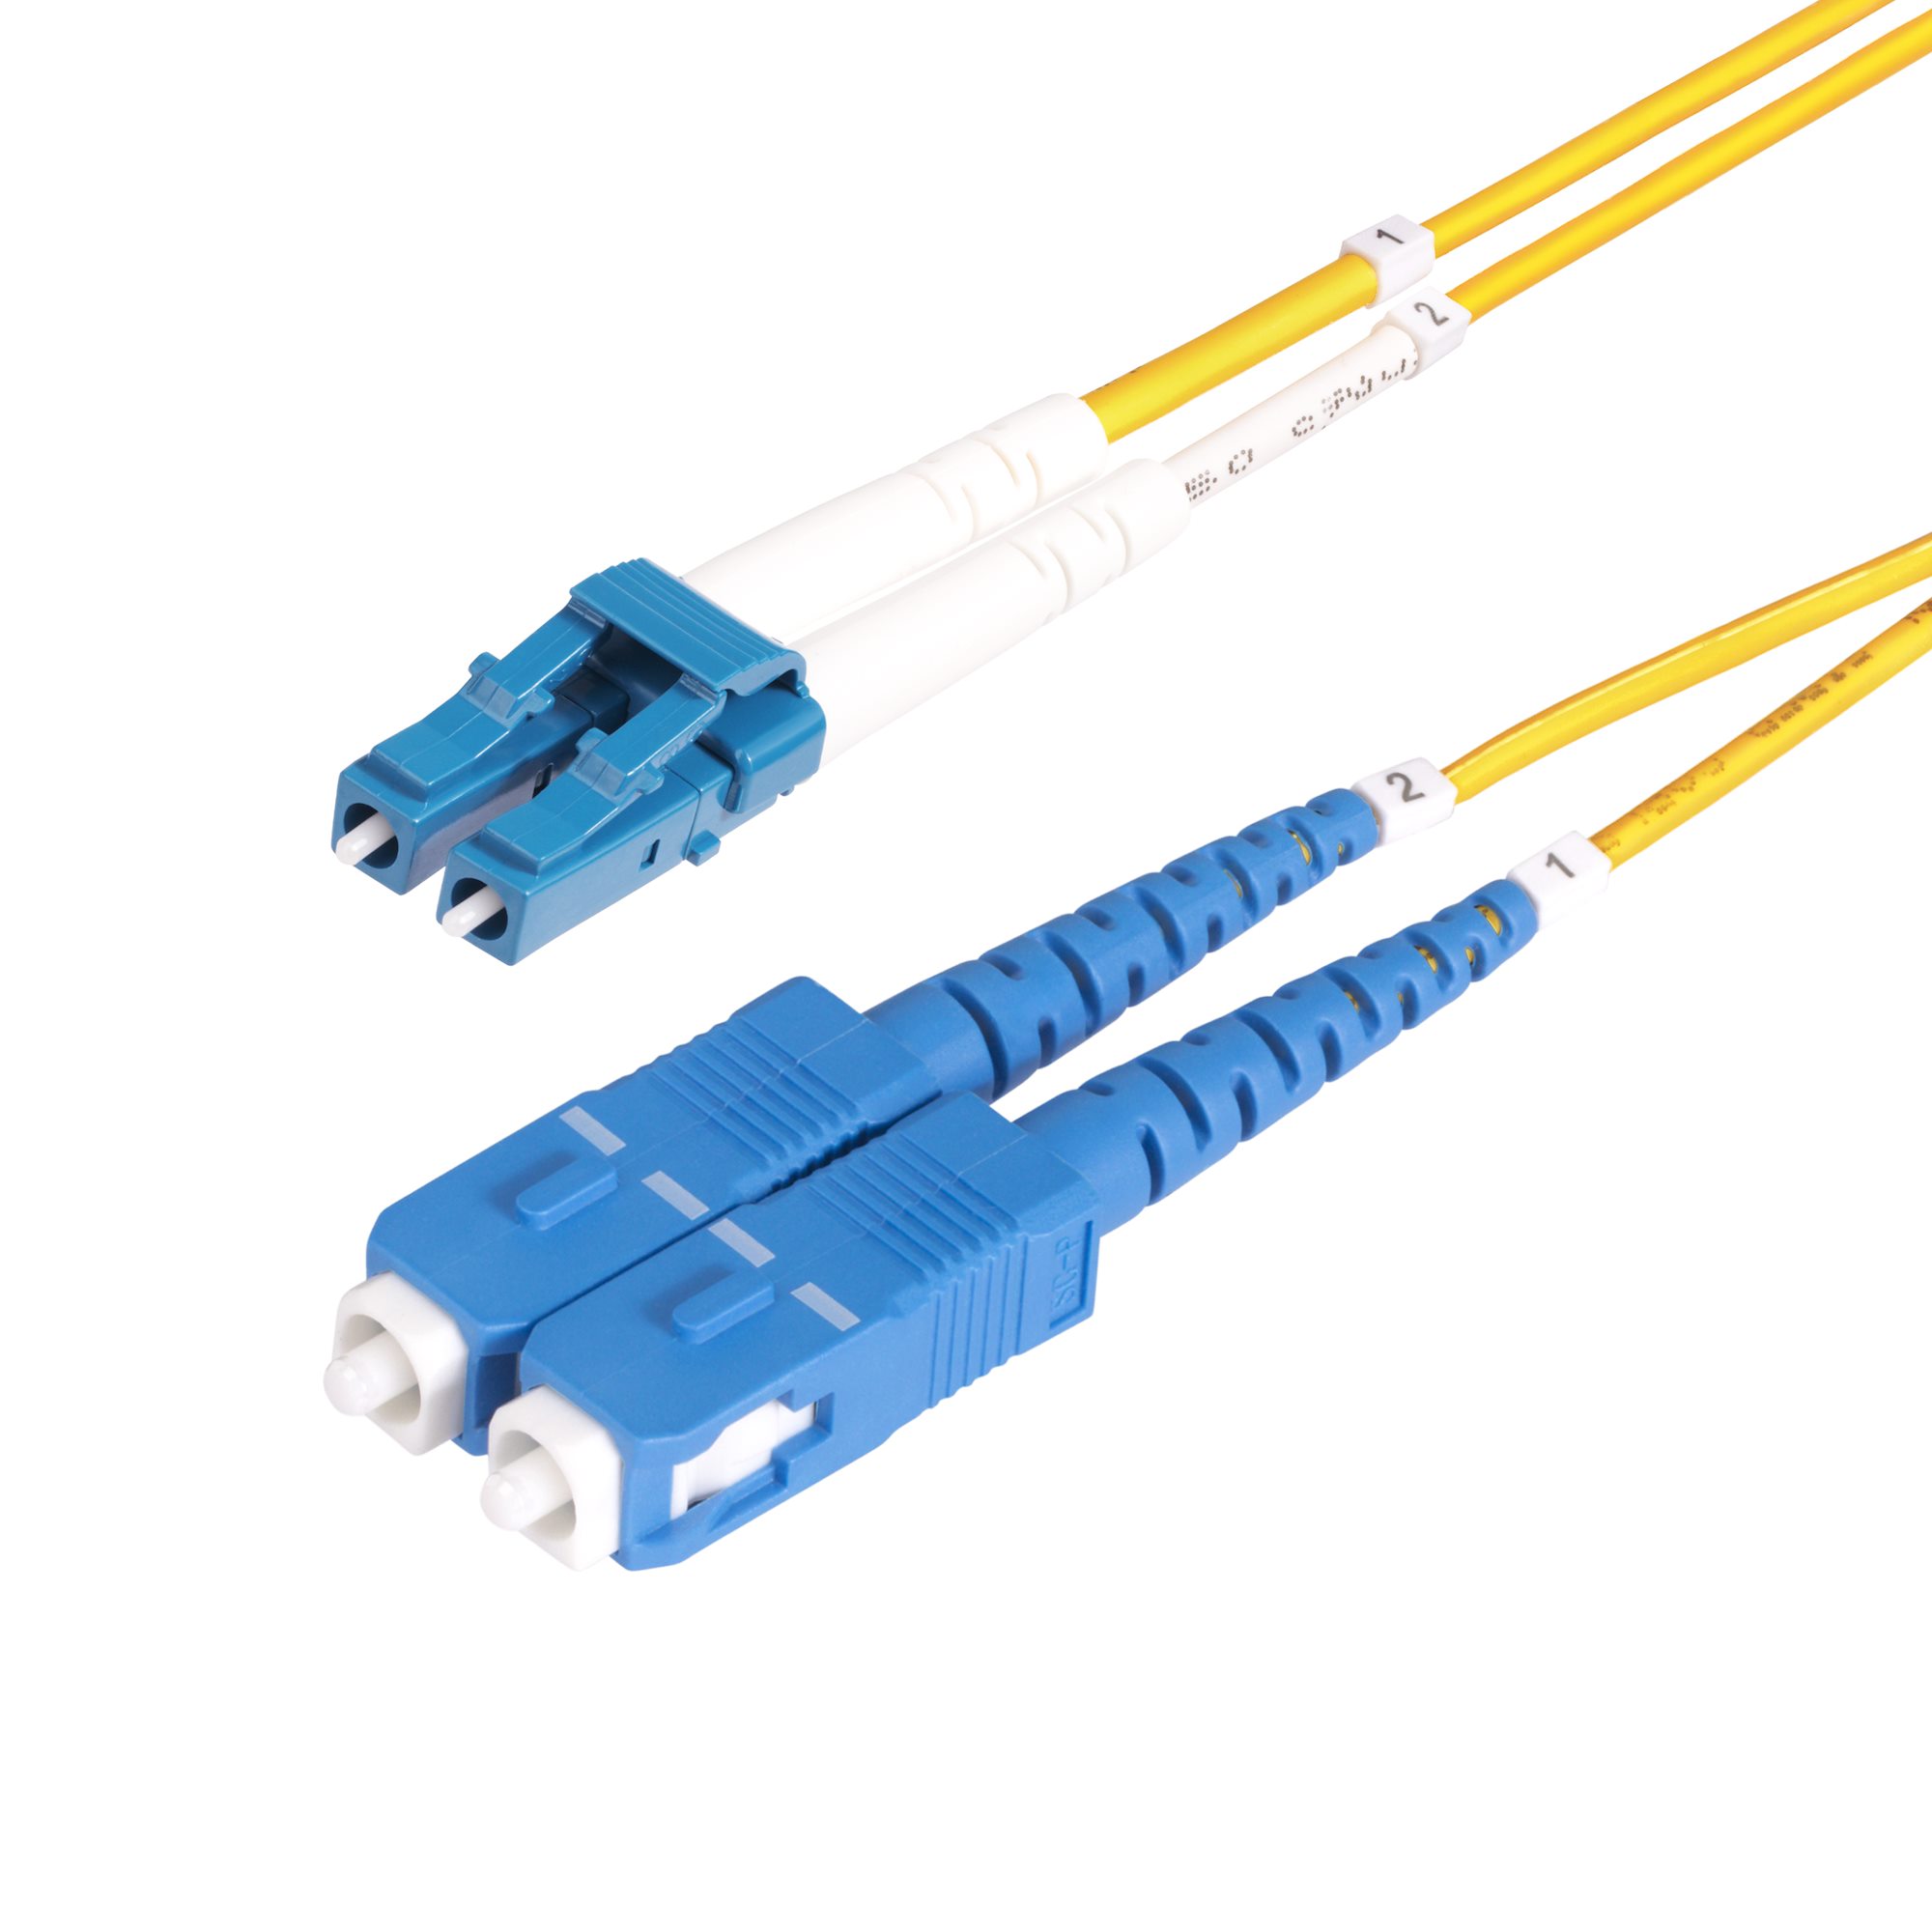 SMLCSC-OS2-30M Cable De Fibra Optica Lc A Sc Upc  Os2 Monomodo De 50M UPC 0065030903363